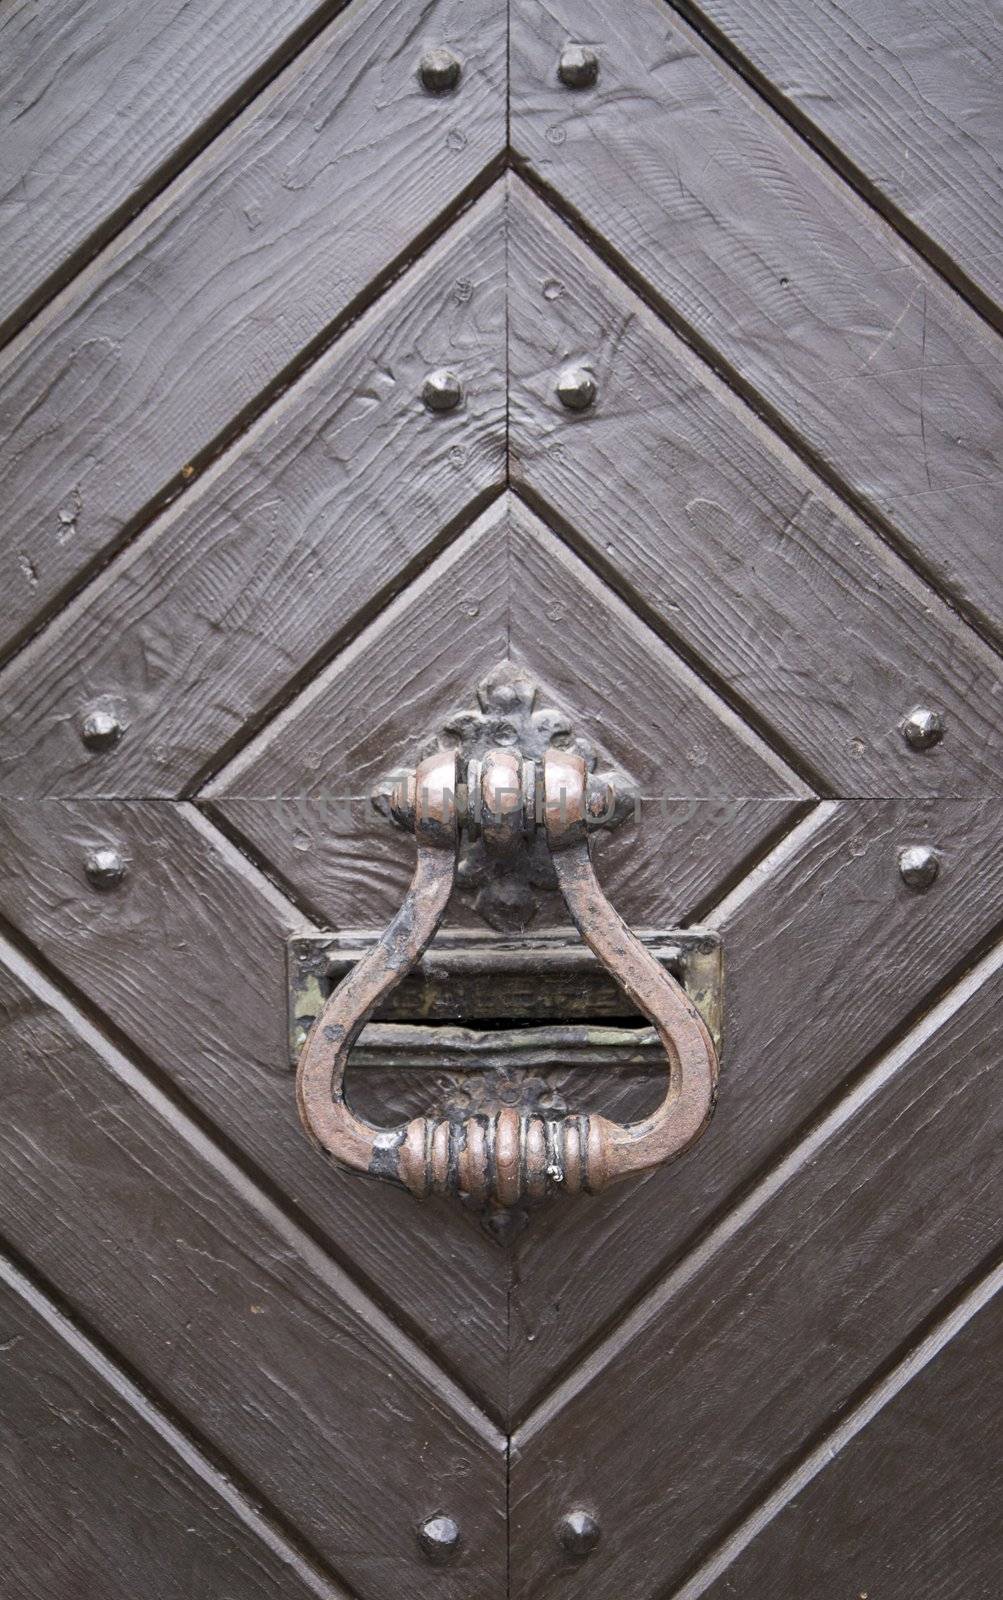 Steel medieval knocker on the old wooden historic door